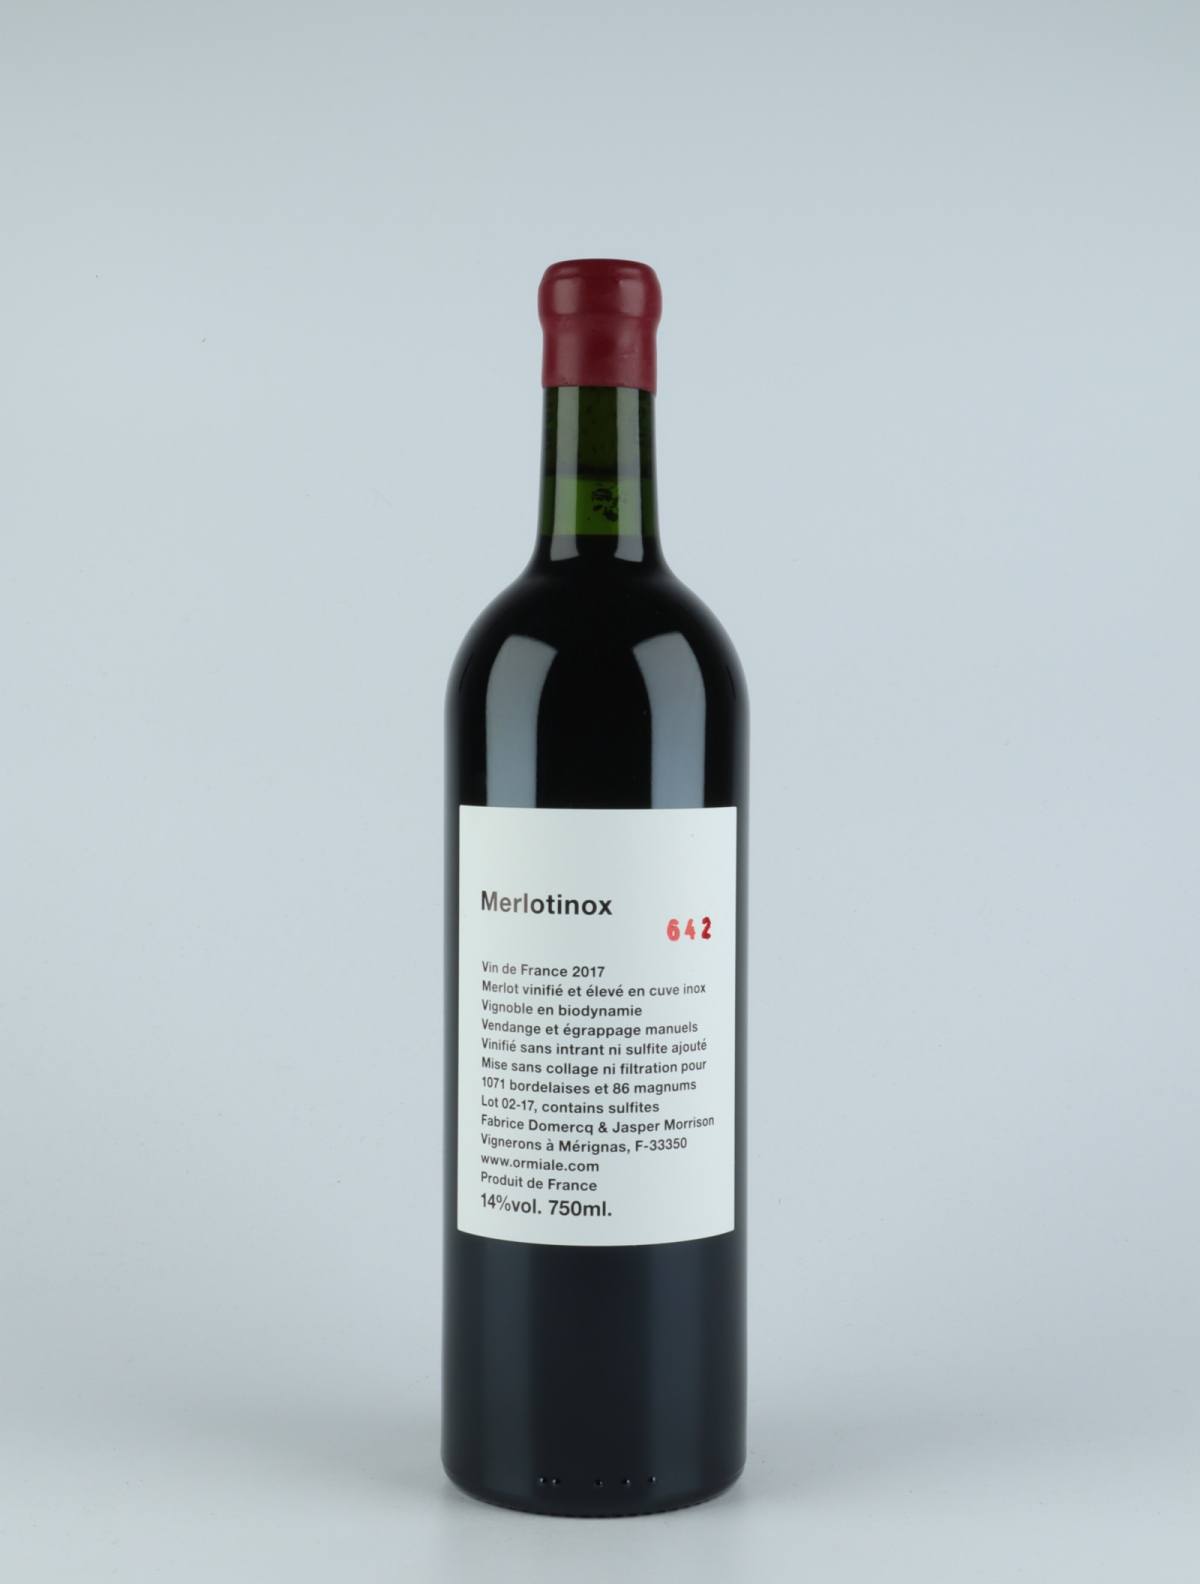 En flaske 2017 Merlotinox Rødvin fra Ormiale, Bordeaux i Frankrig